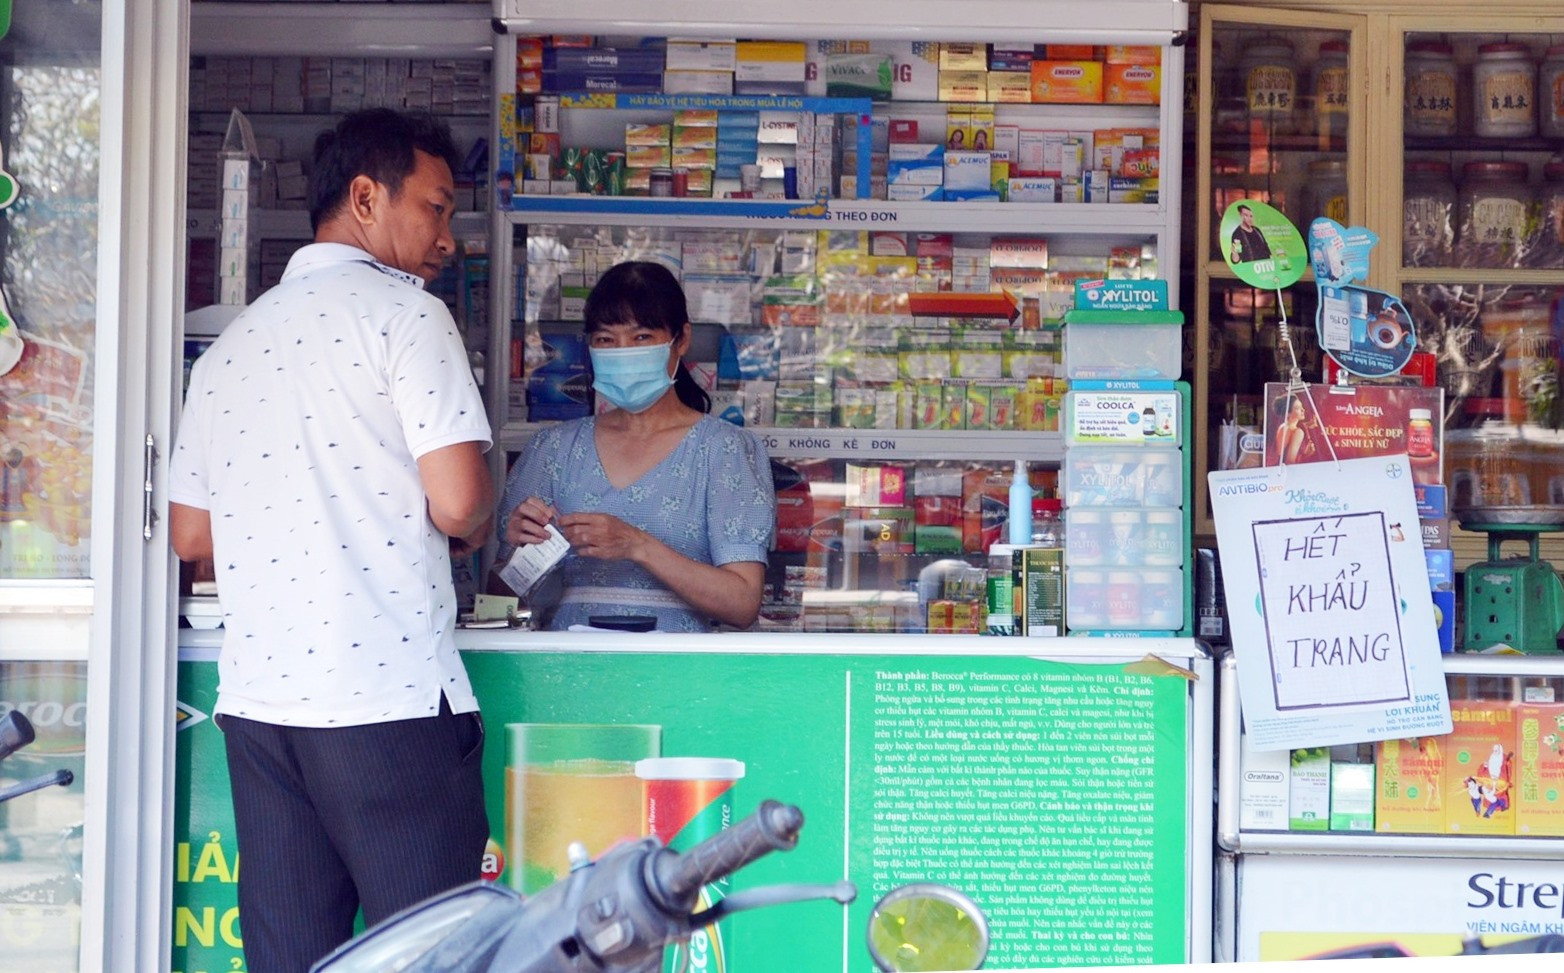 Nhiều nhà thuốc tại Hội An, Điện Bàn đã treo biển “Hết khẩu trang”